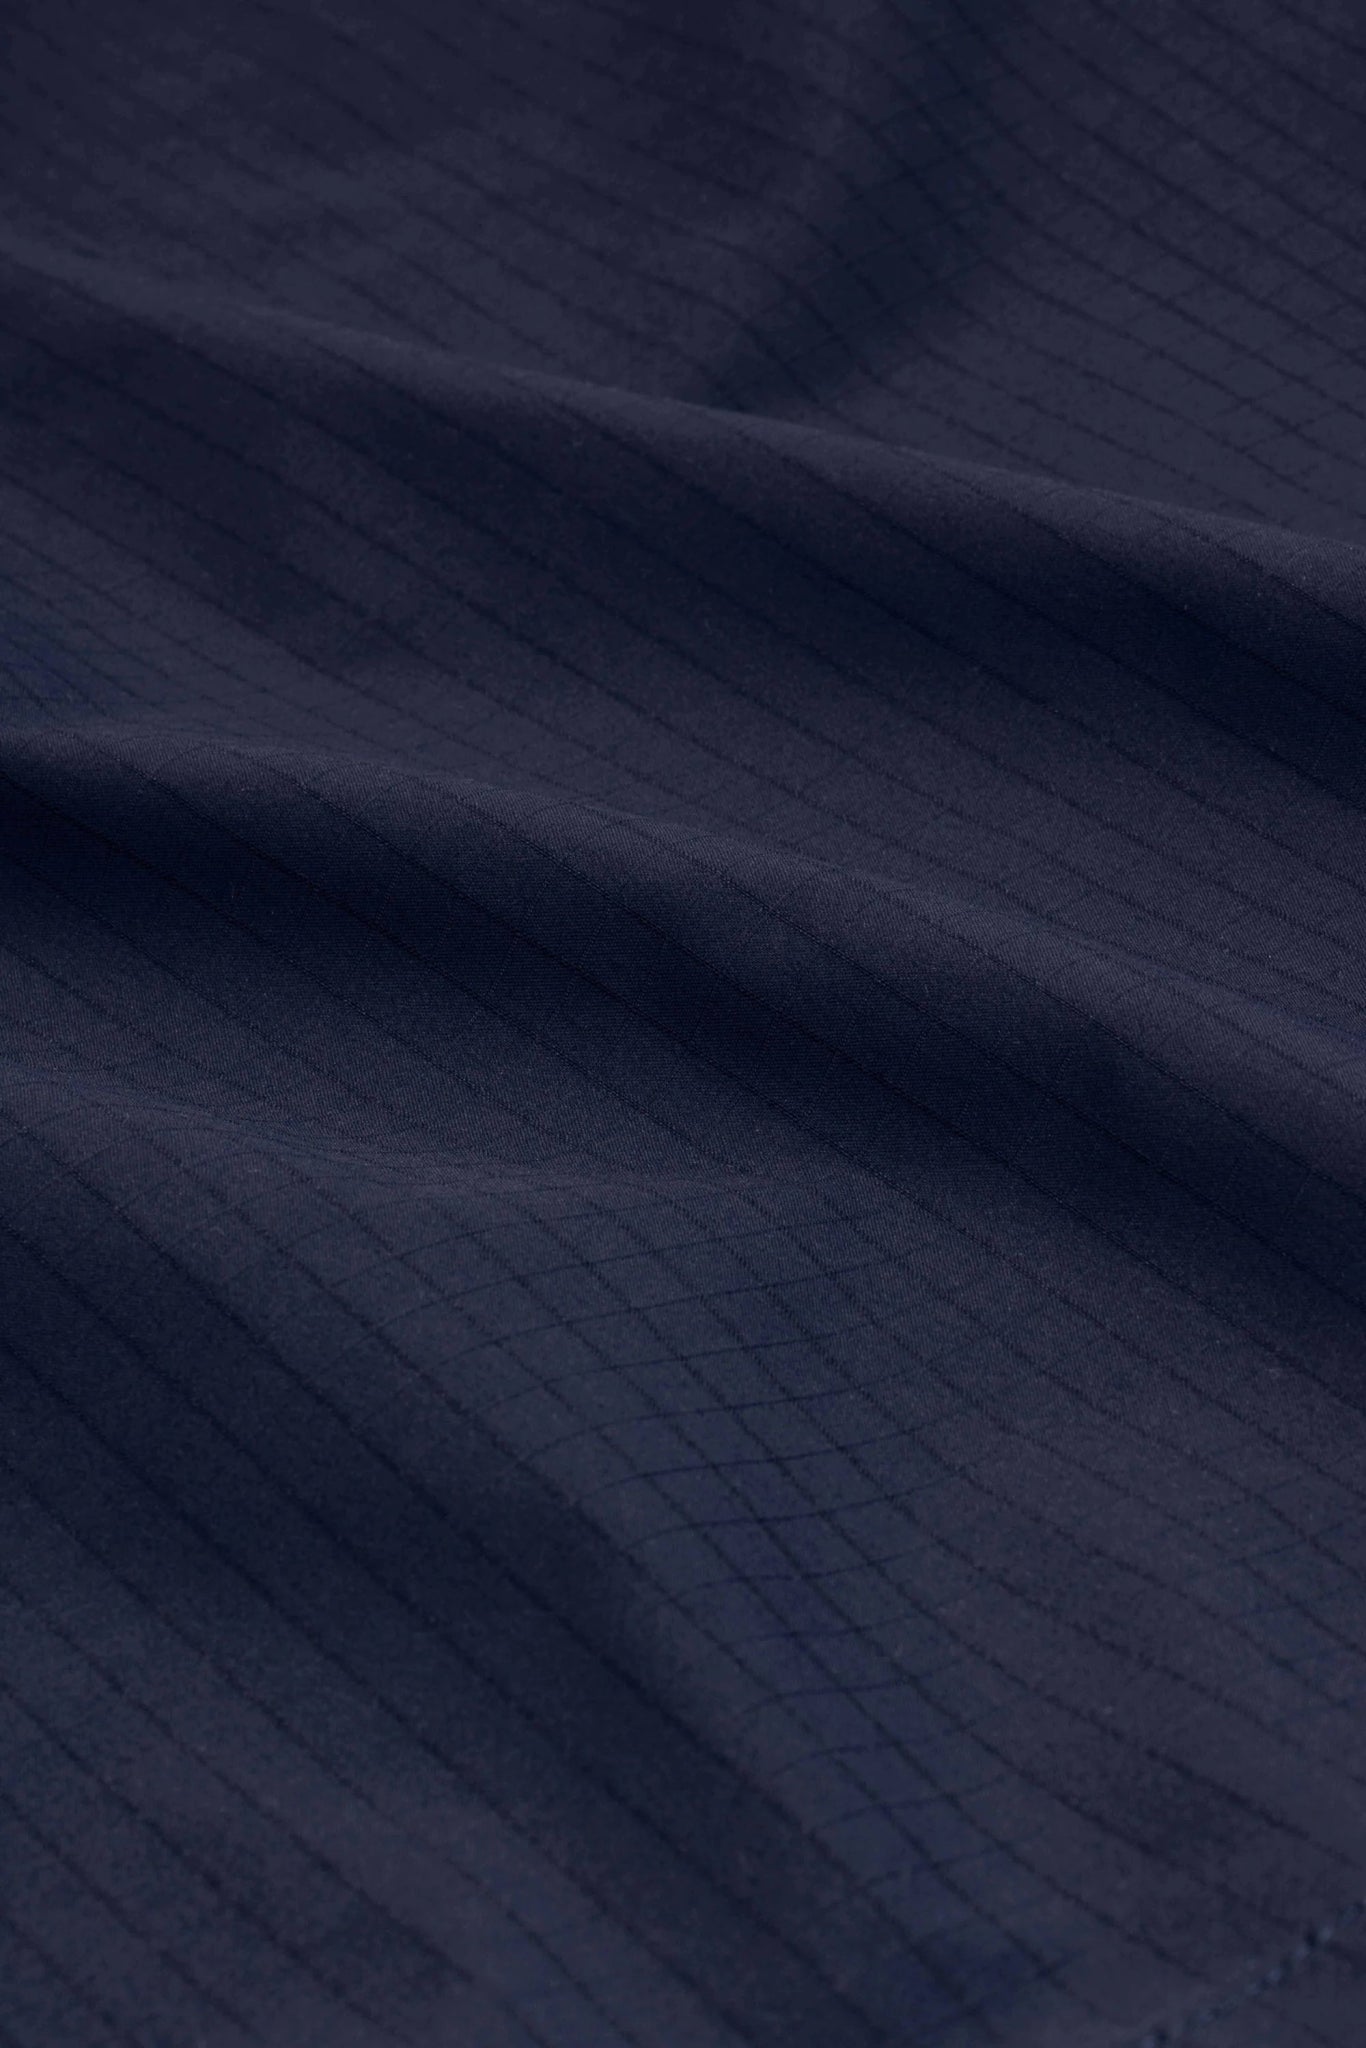 A close up image of a DROLE DE MONSIEUR JACKET D-JT178-PL131 LA VESTE SLOGAN ESQUISSE NY, water-repellent fabric.